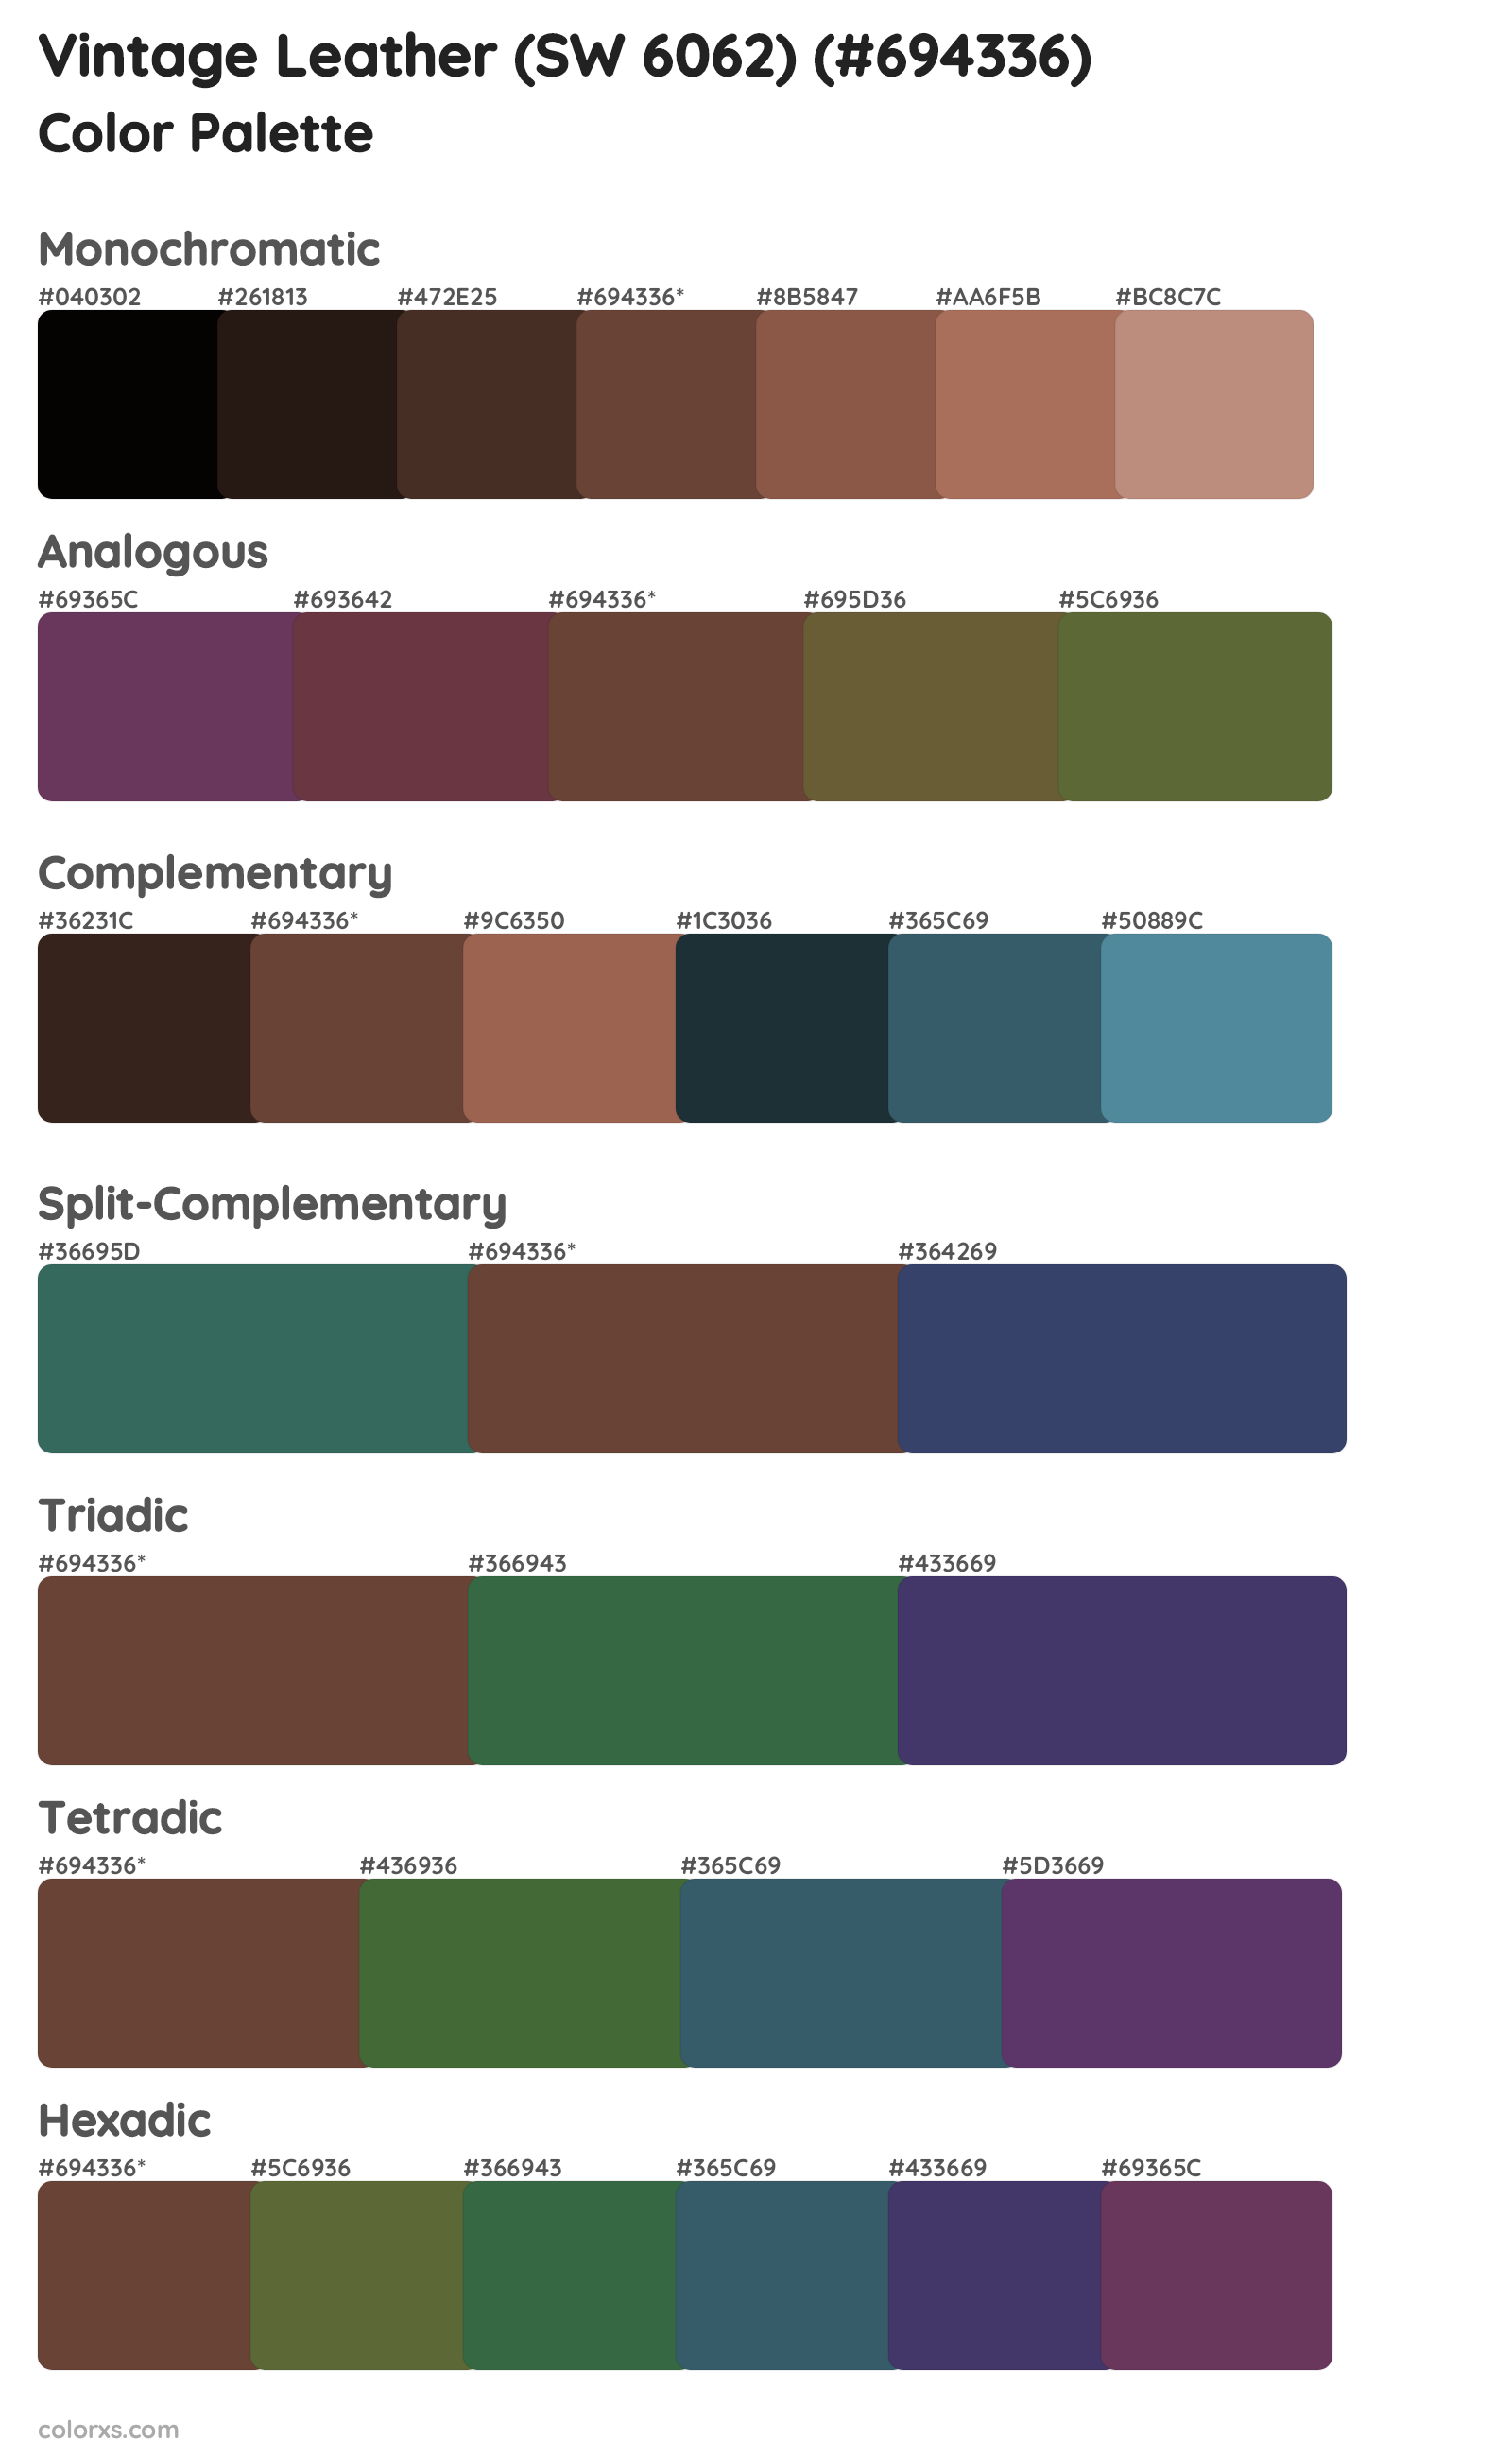 Vintage Leather (SW 6062) Color Scheme Palettes